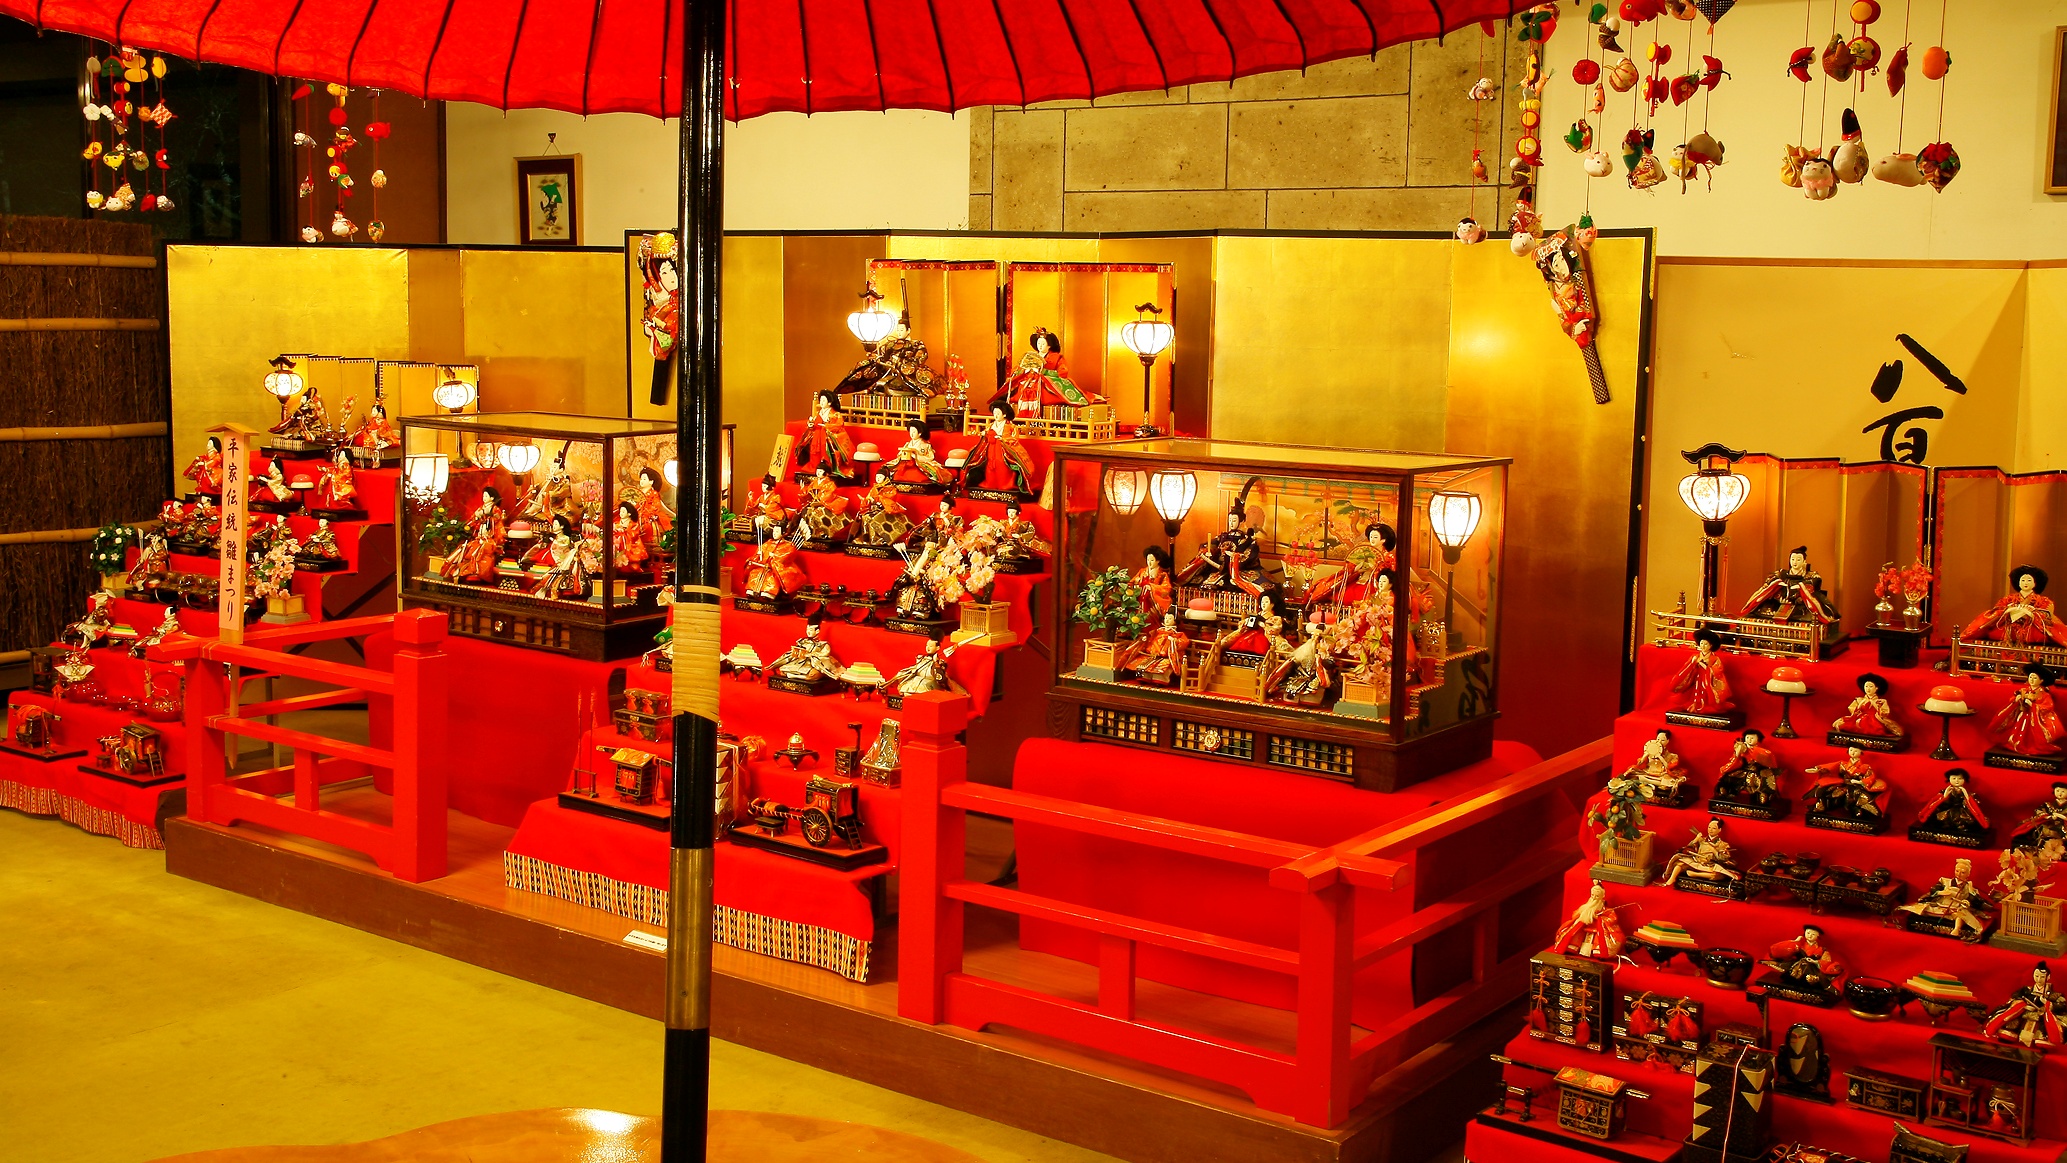 日本の伝統行事“雛祭り”手作りの吊るし雛など『蔵』と調和した、雅な「和」の空間が【揚羽】を彩ります!